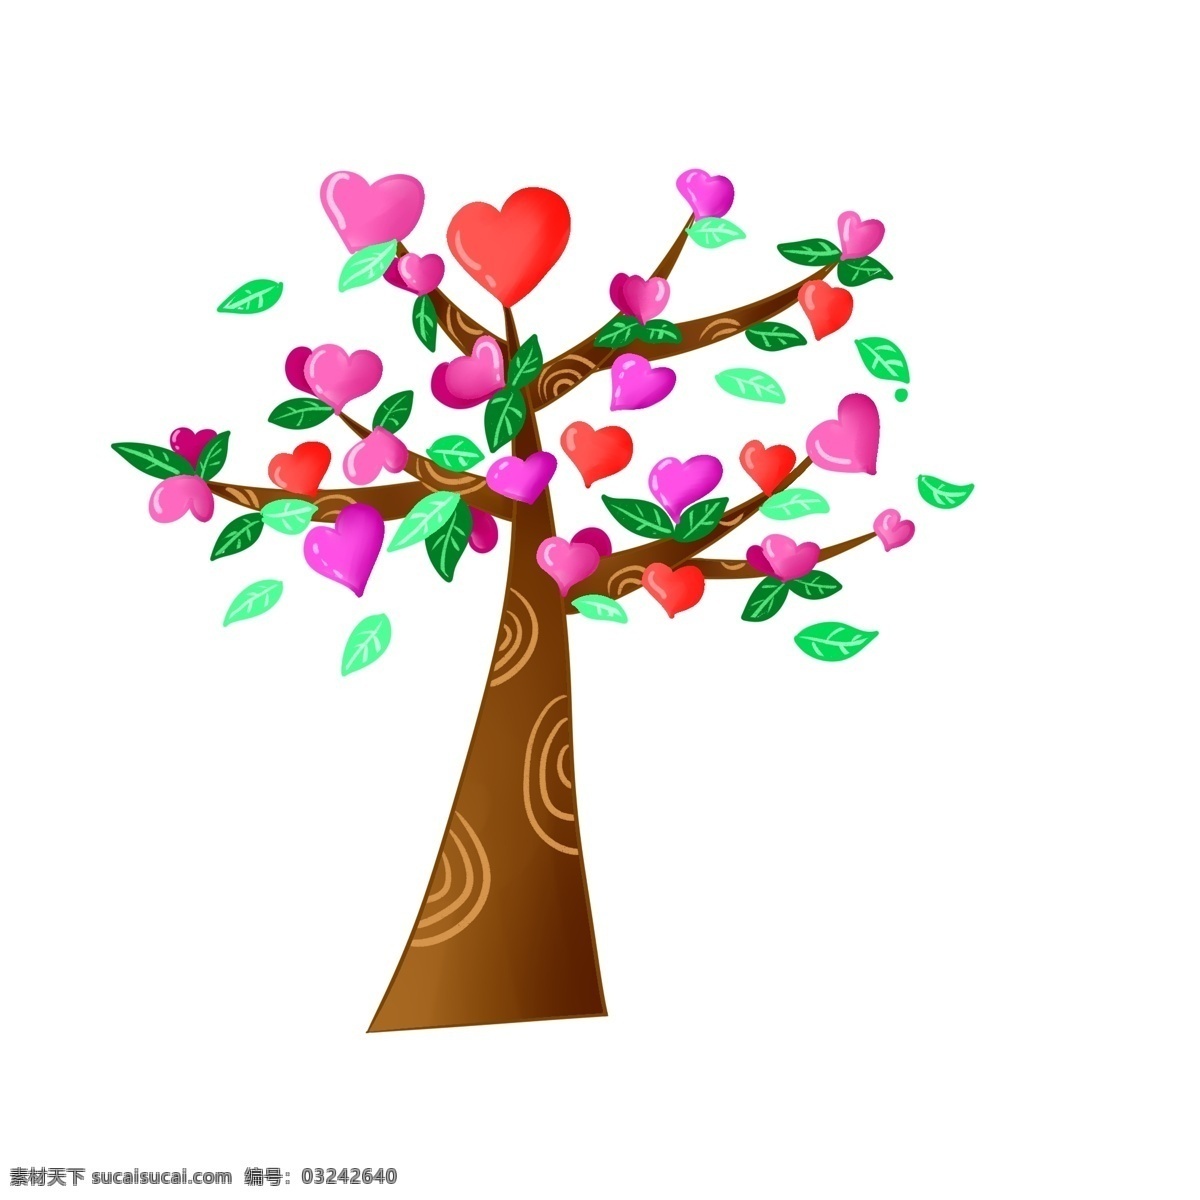 棕色 立体 创意 树 插图 红色心形 粉色心形 心形创意树 漂亮的创意树 大气的创意树 棕色树木 绿色植物